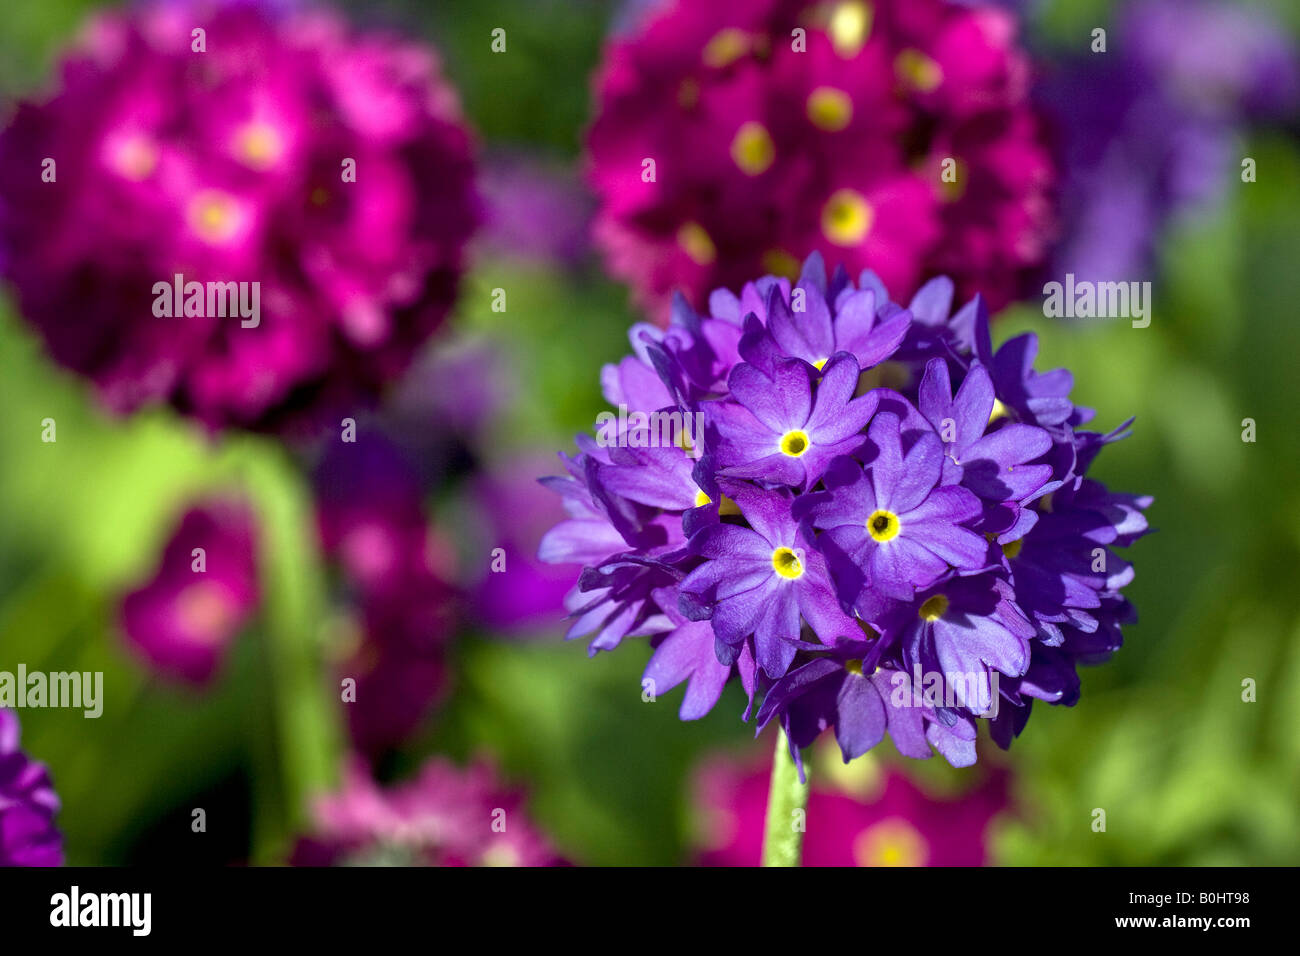 Flowering Drumstick or Himalayan Primrose (Primula denticulata) Stock Photo